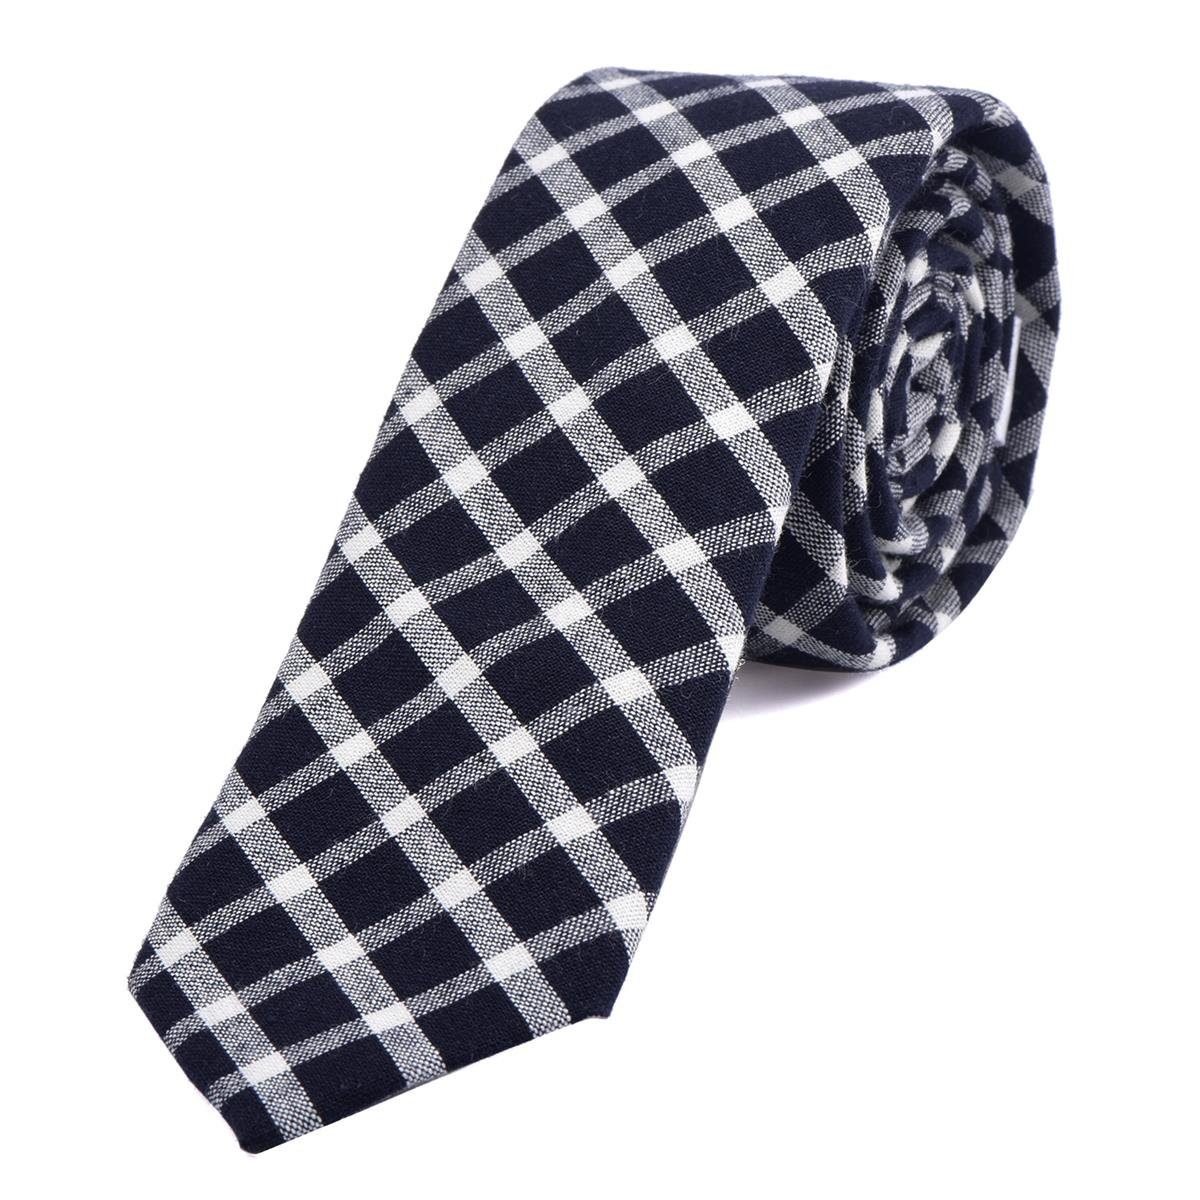 DonDon Krawatte Herren Krawatte 6 cm mit Karos oder Streifen (Packung, 1-St., 1x Krawatte) Baumwolle, kariert oder gestreift, für Büro oder festliche Veranstaltungen dunkelblau-weiß kariert